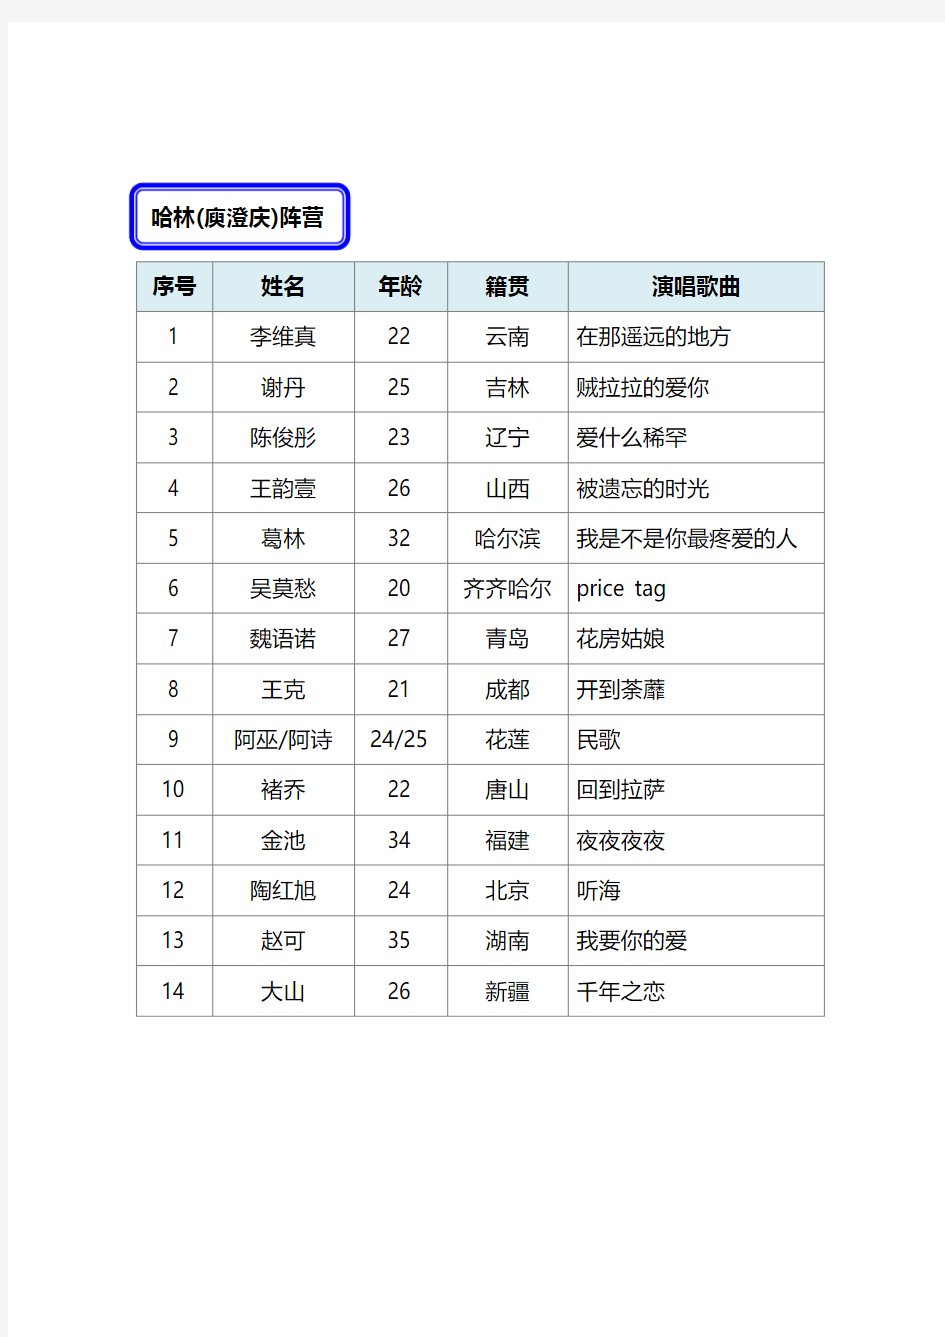 中国好声音学员名单全部阵容